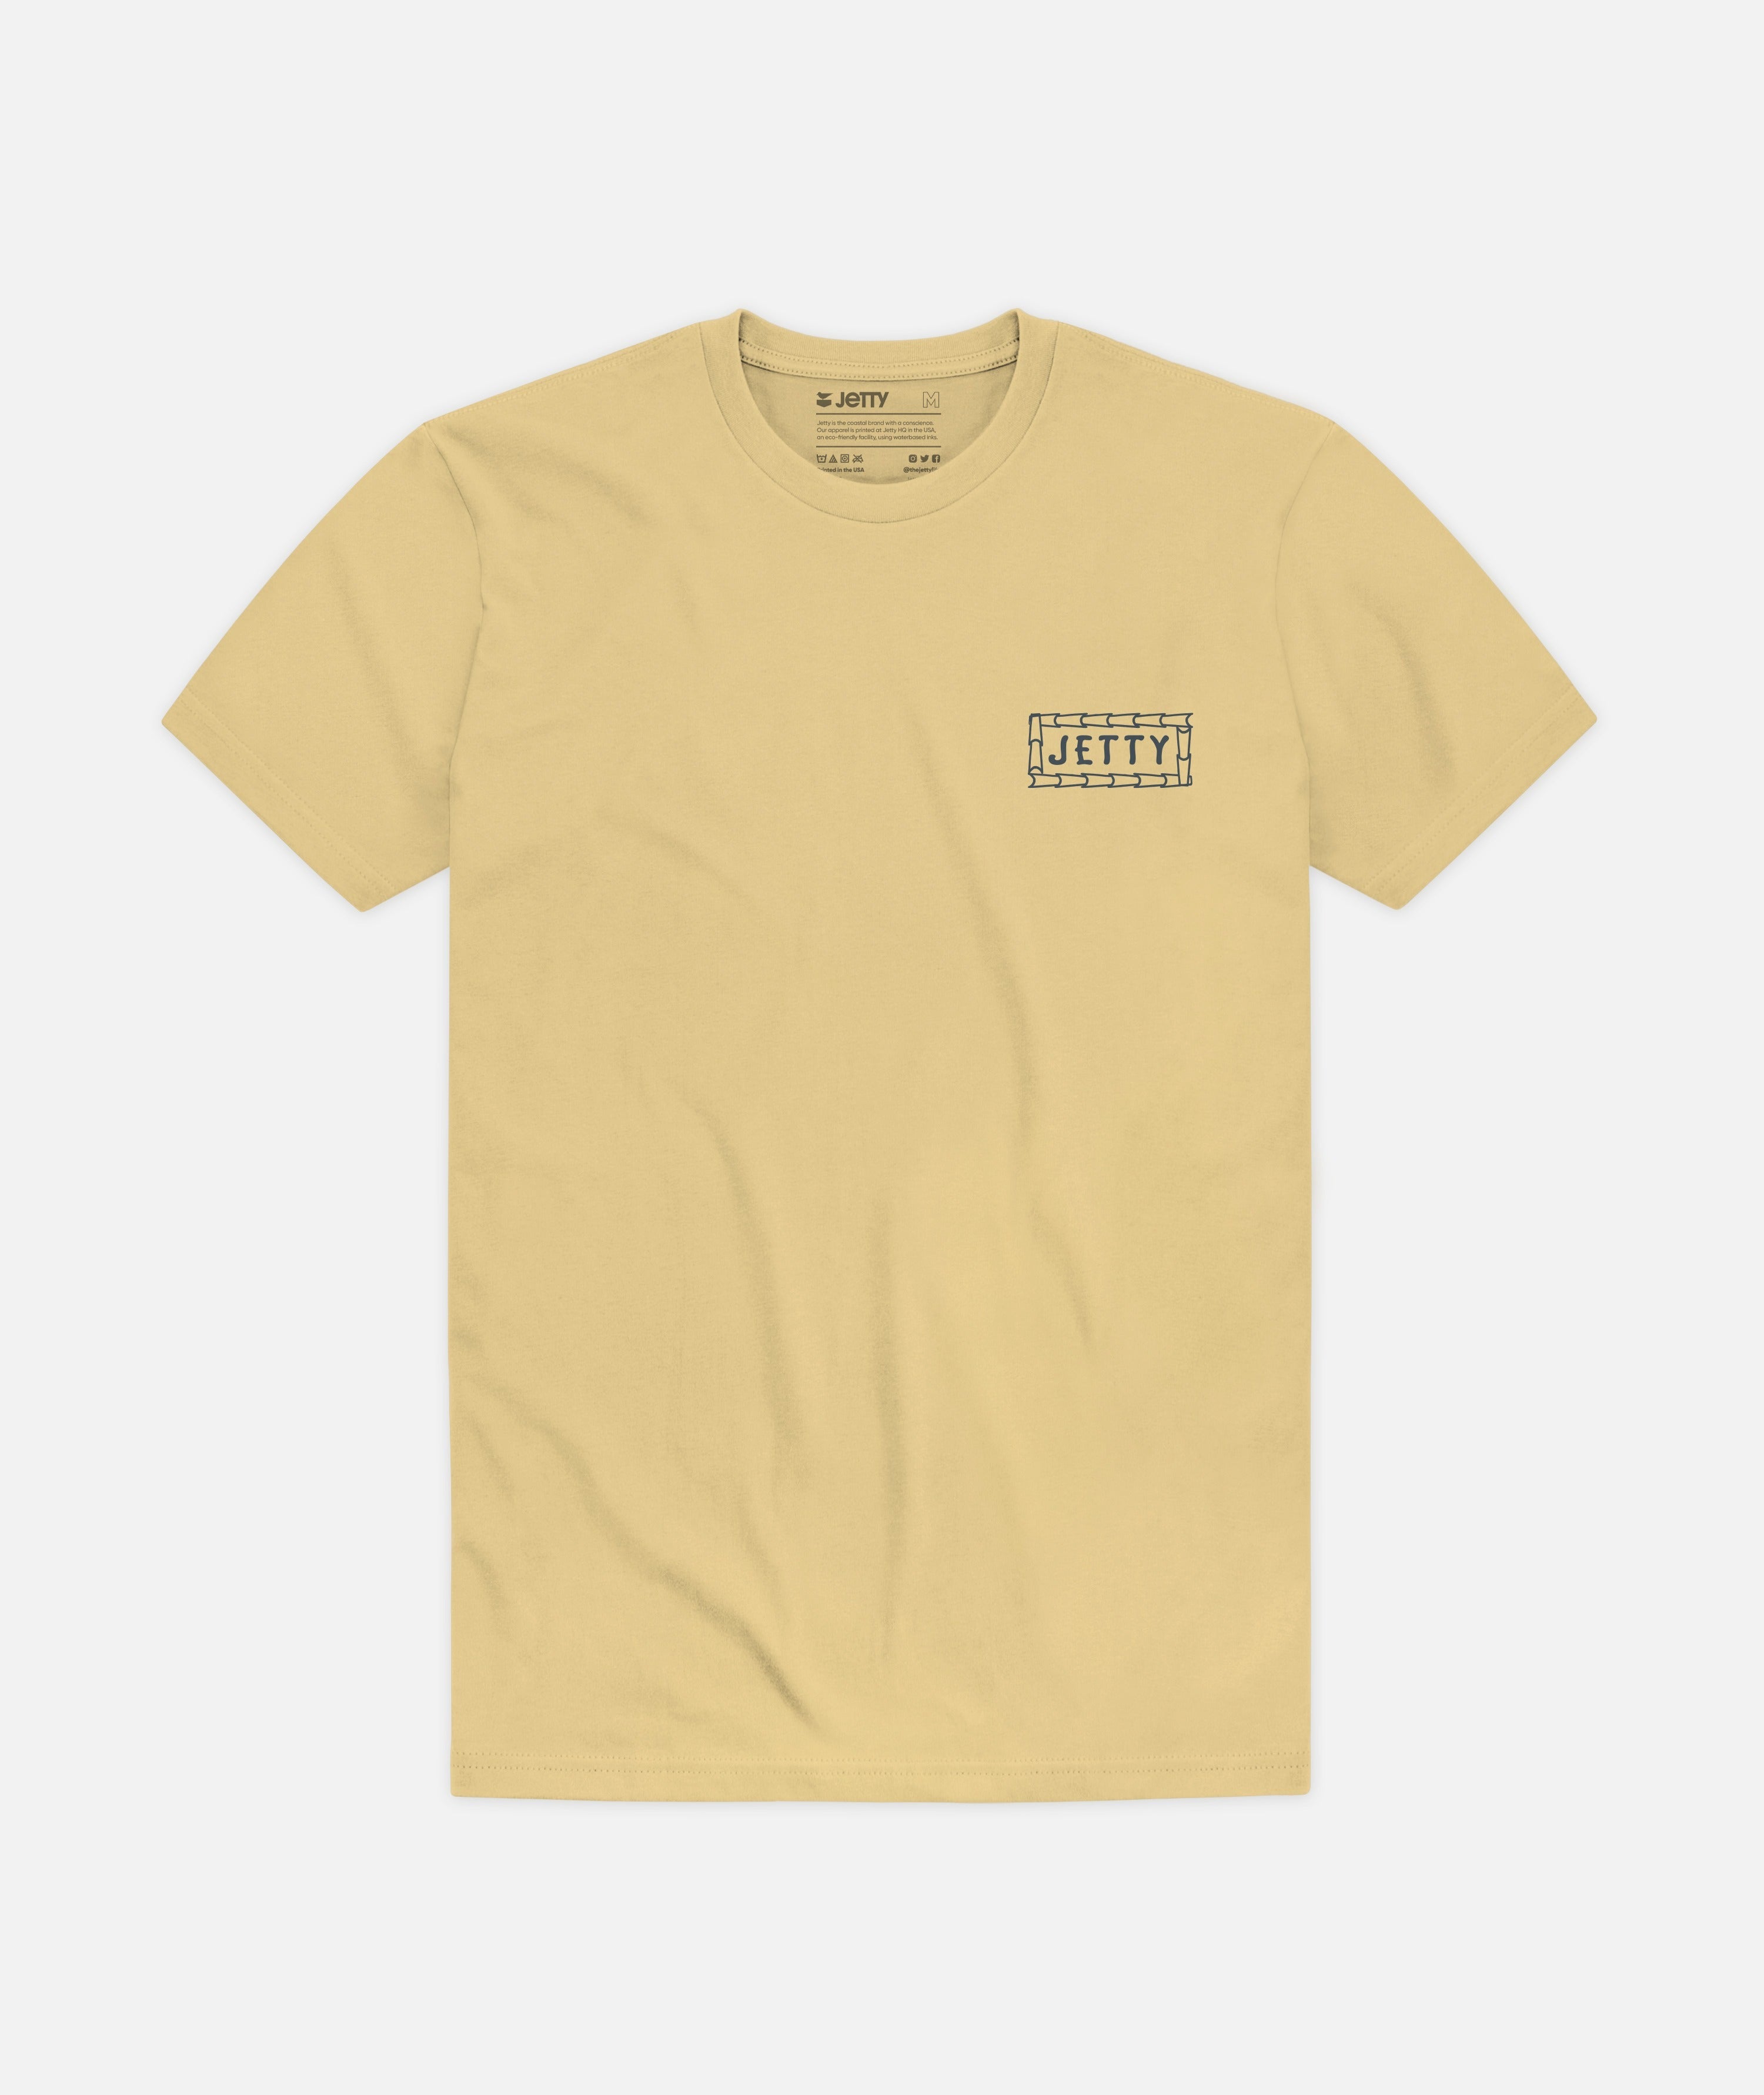 Jetty Billfish Tee Shirt